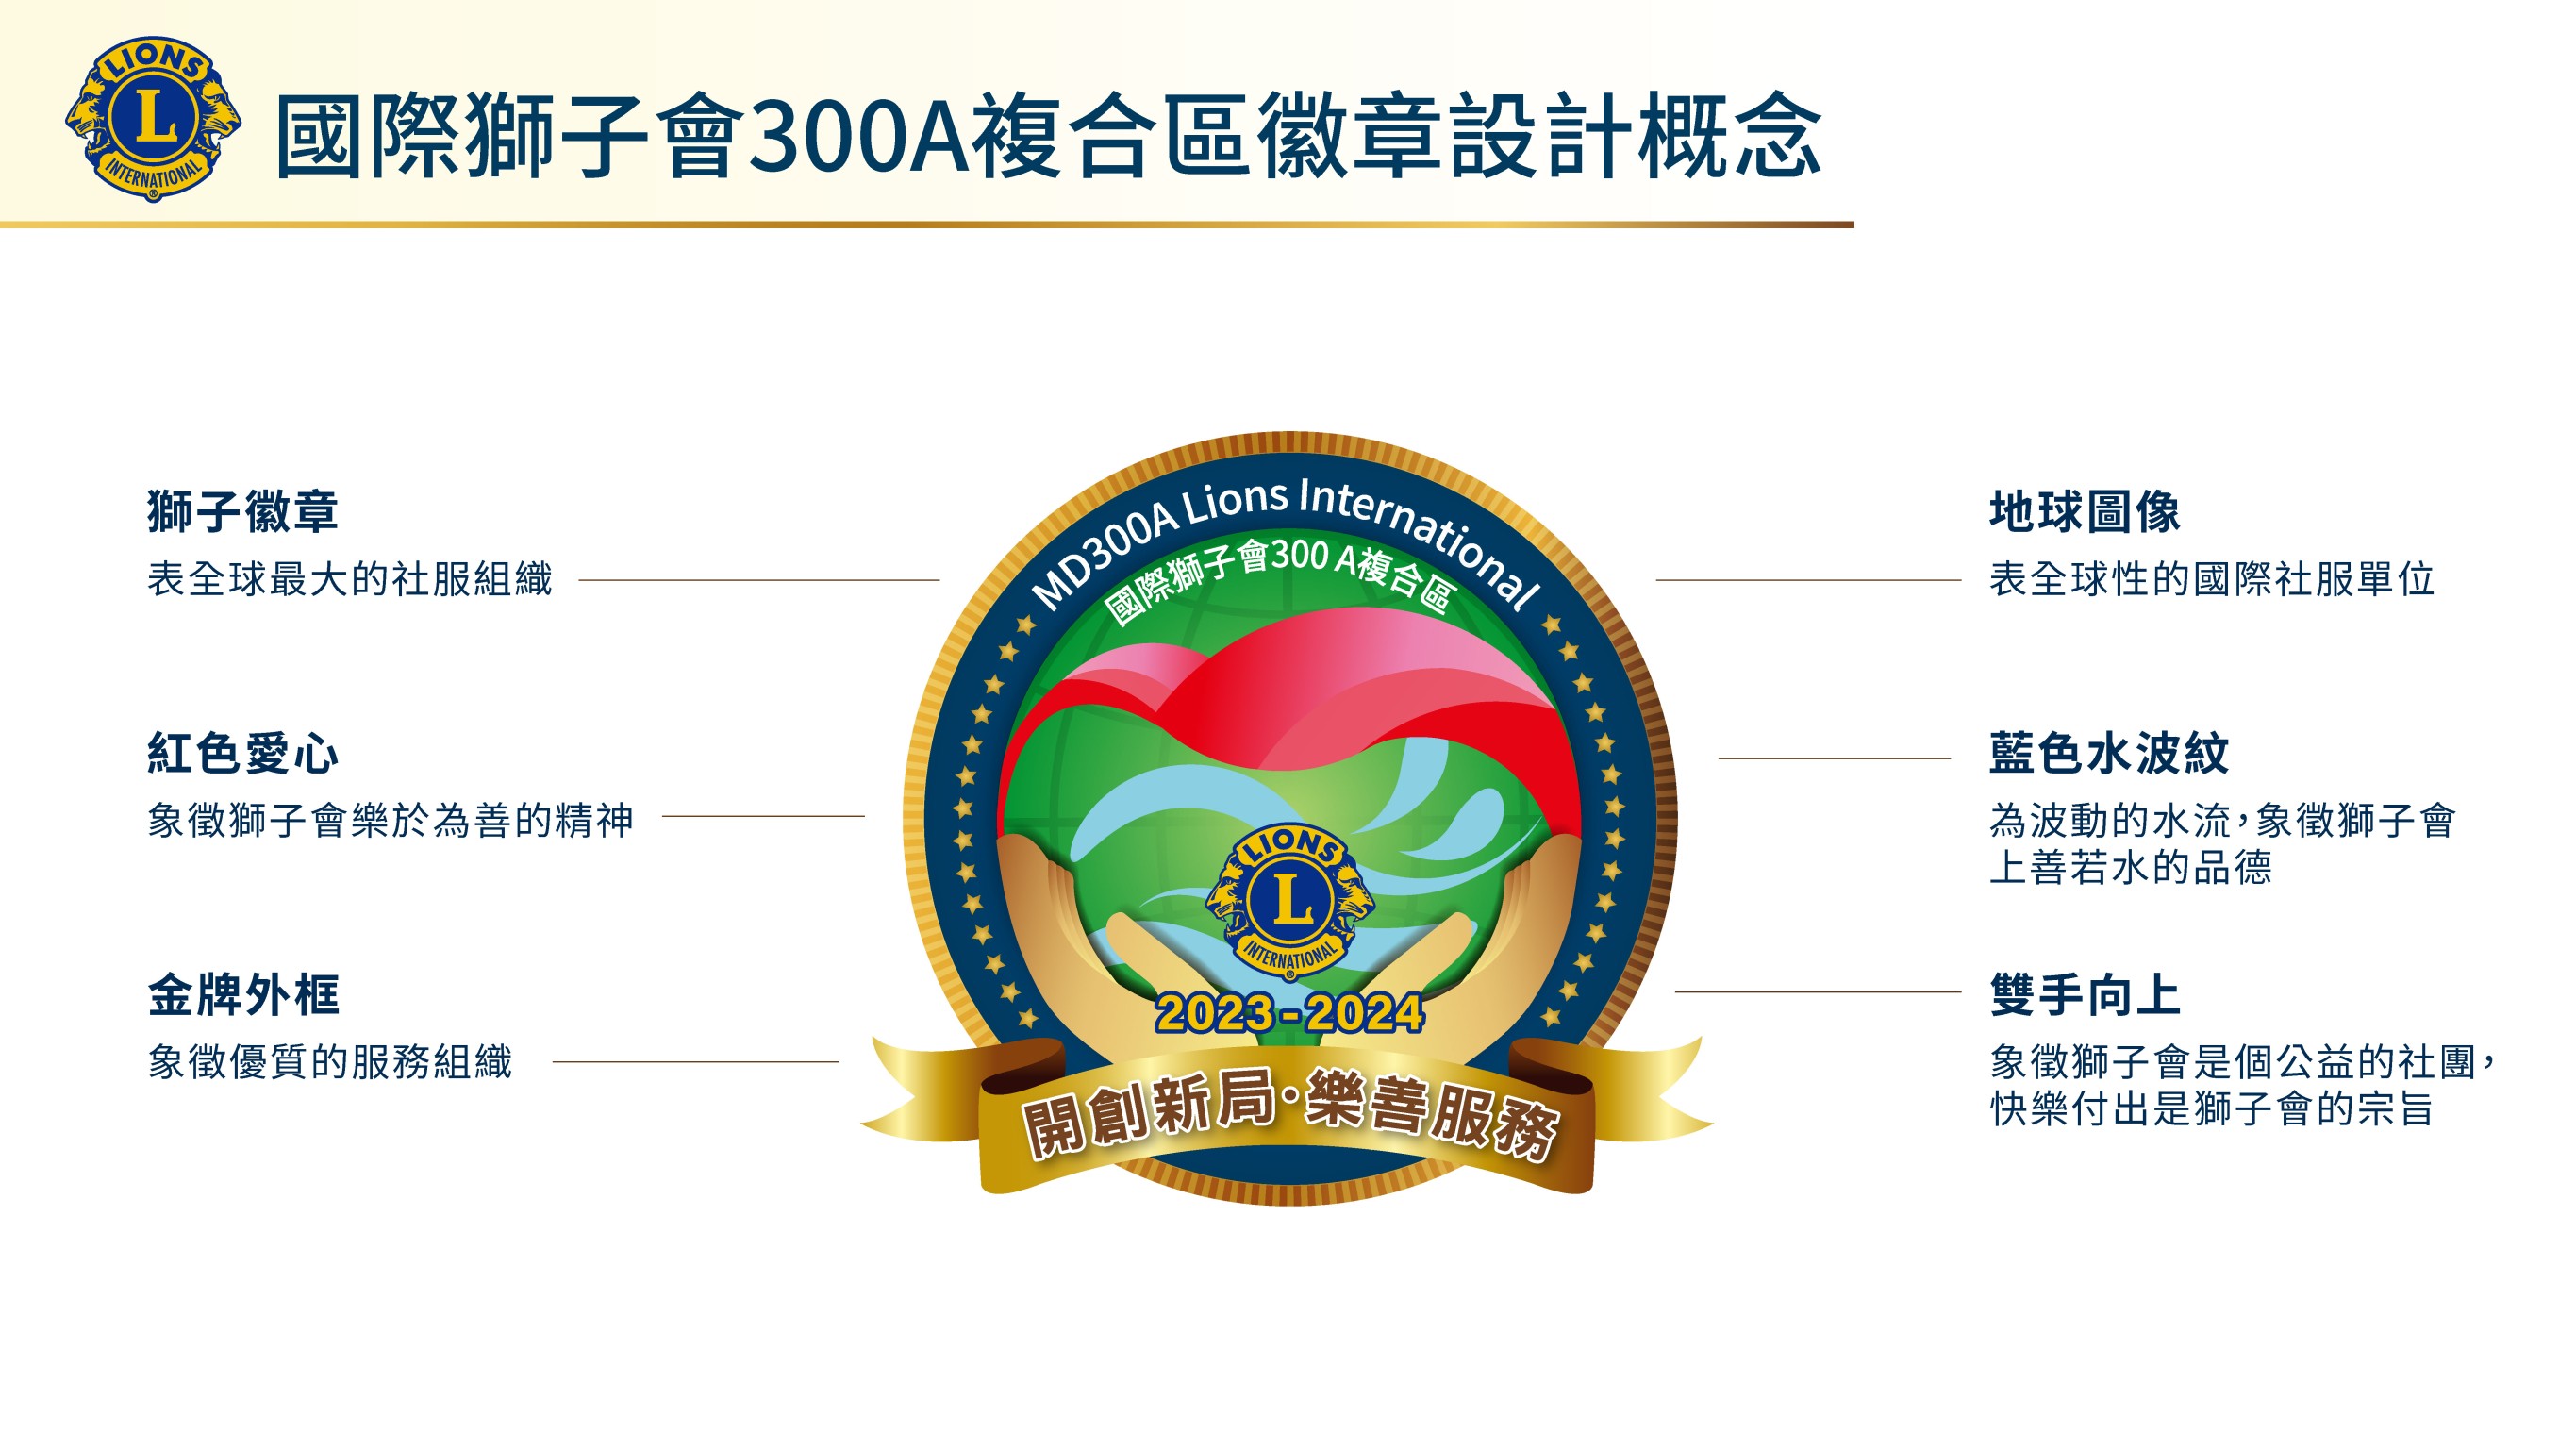 國際獅子會300A複合區 23-24年度 LOGO 徽章設計概念